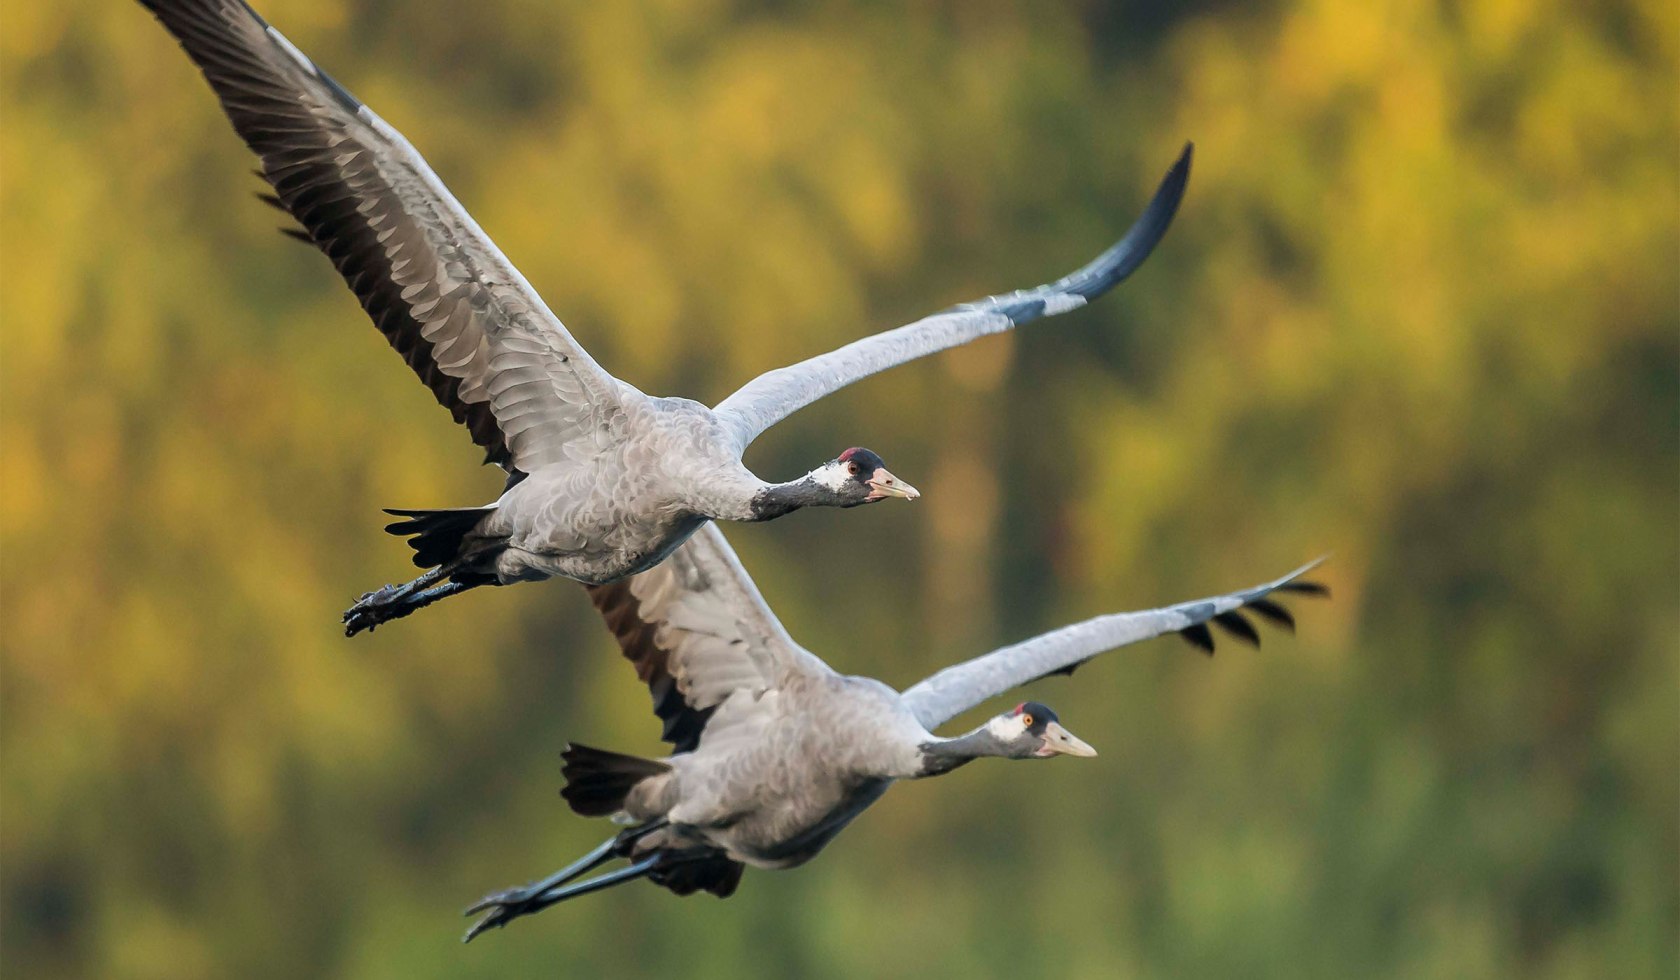 Flying pair of cranes, © wild-woanders.com / Dieter Damschen